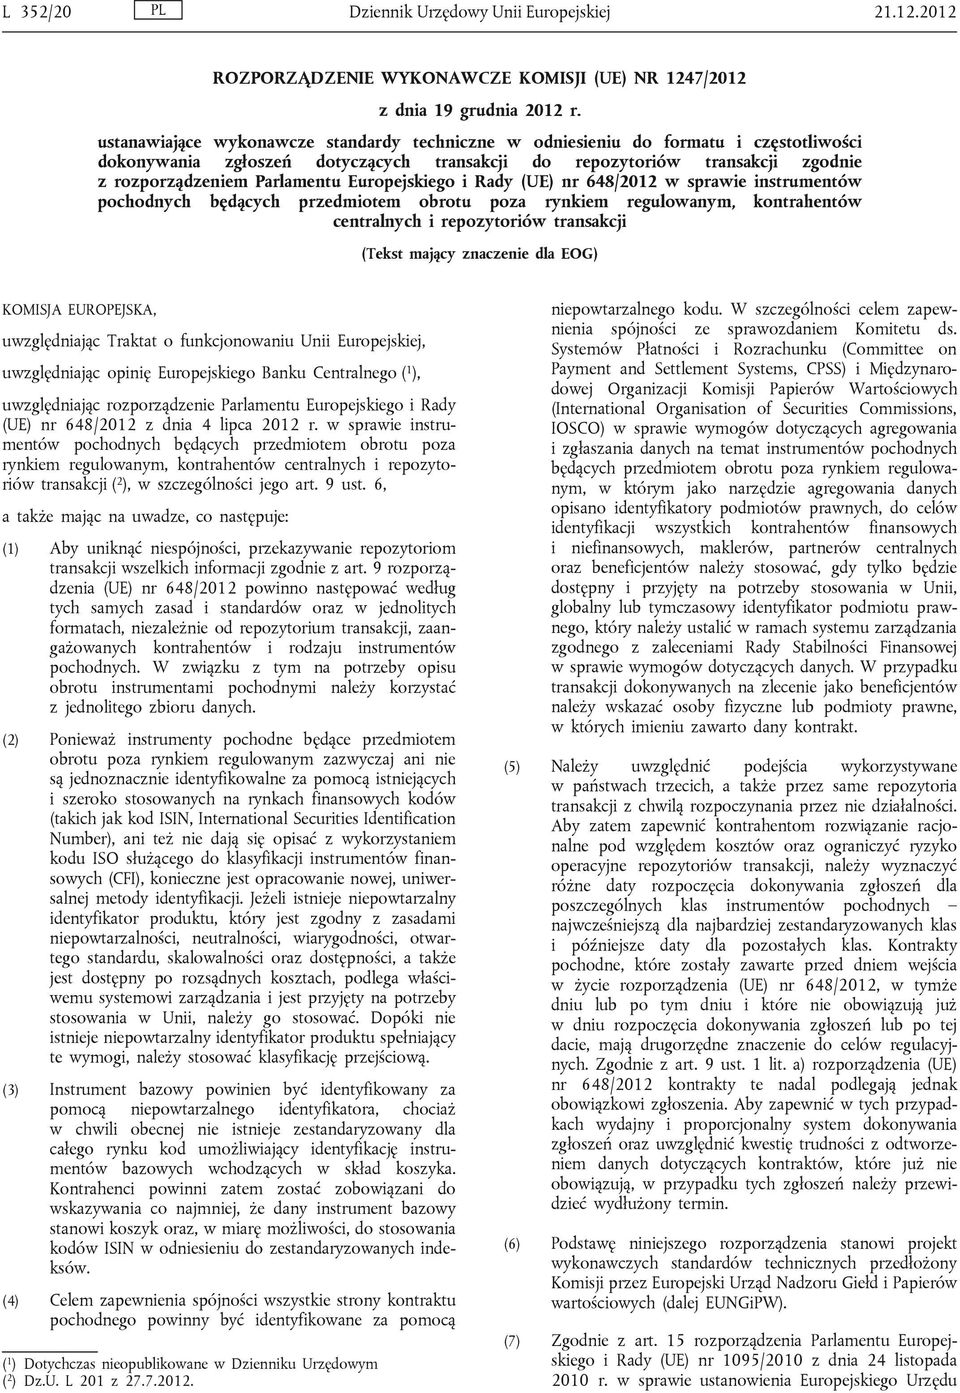 Europejskiego i Rady (UE) nr 648/2012 w sprawie instrumentów pochodnych będących przedmiotem obrotu poza rynkiem regulowanym, kontrahentów centralnych i repozytoriów transakcji (Tekst mający